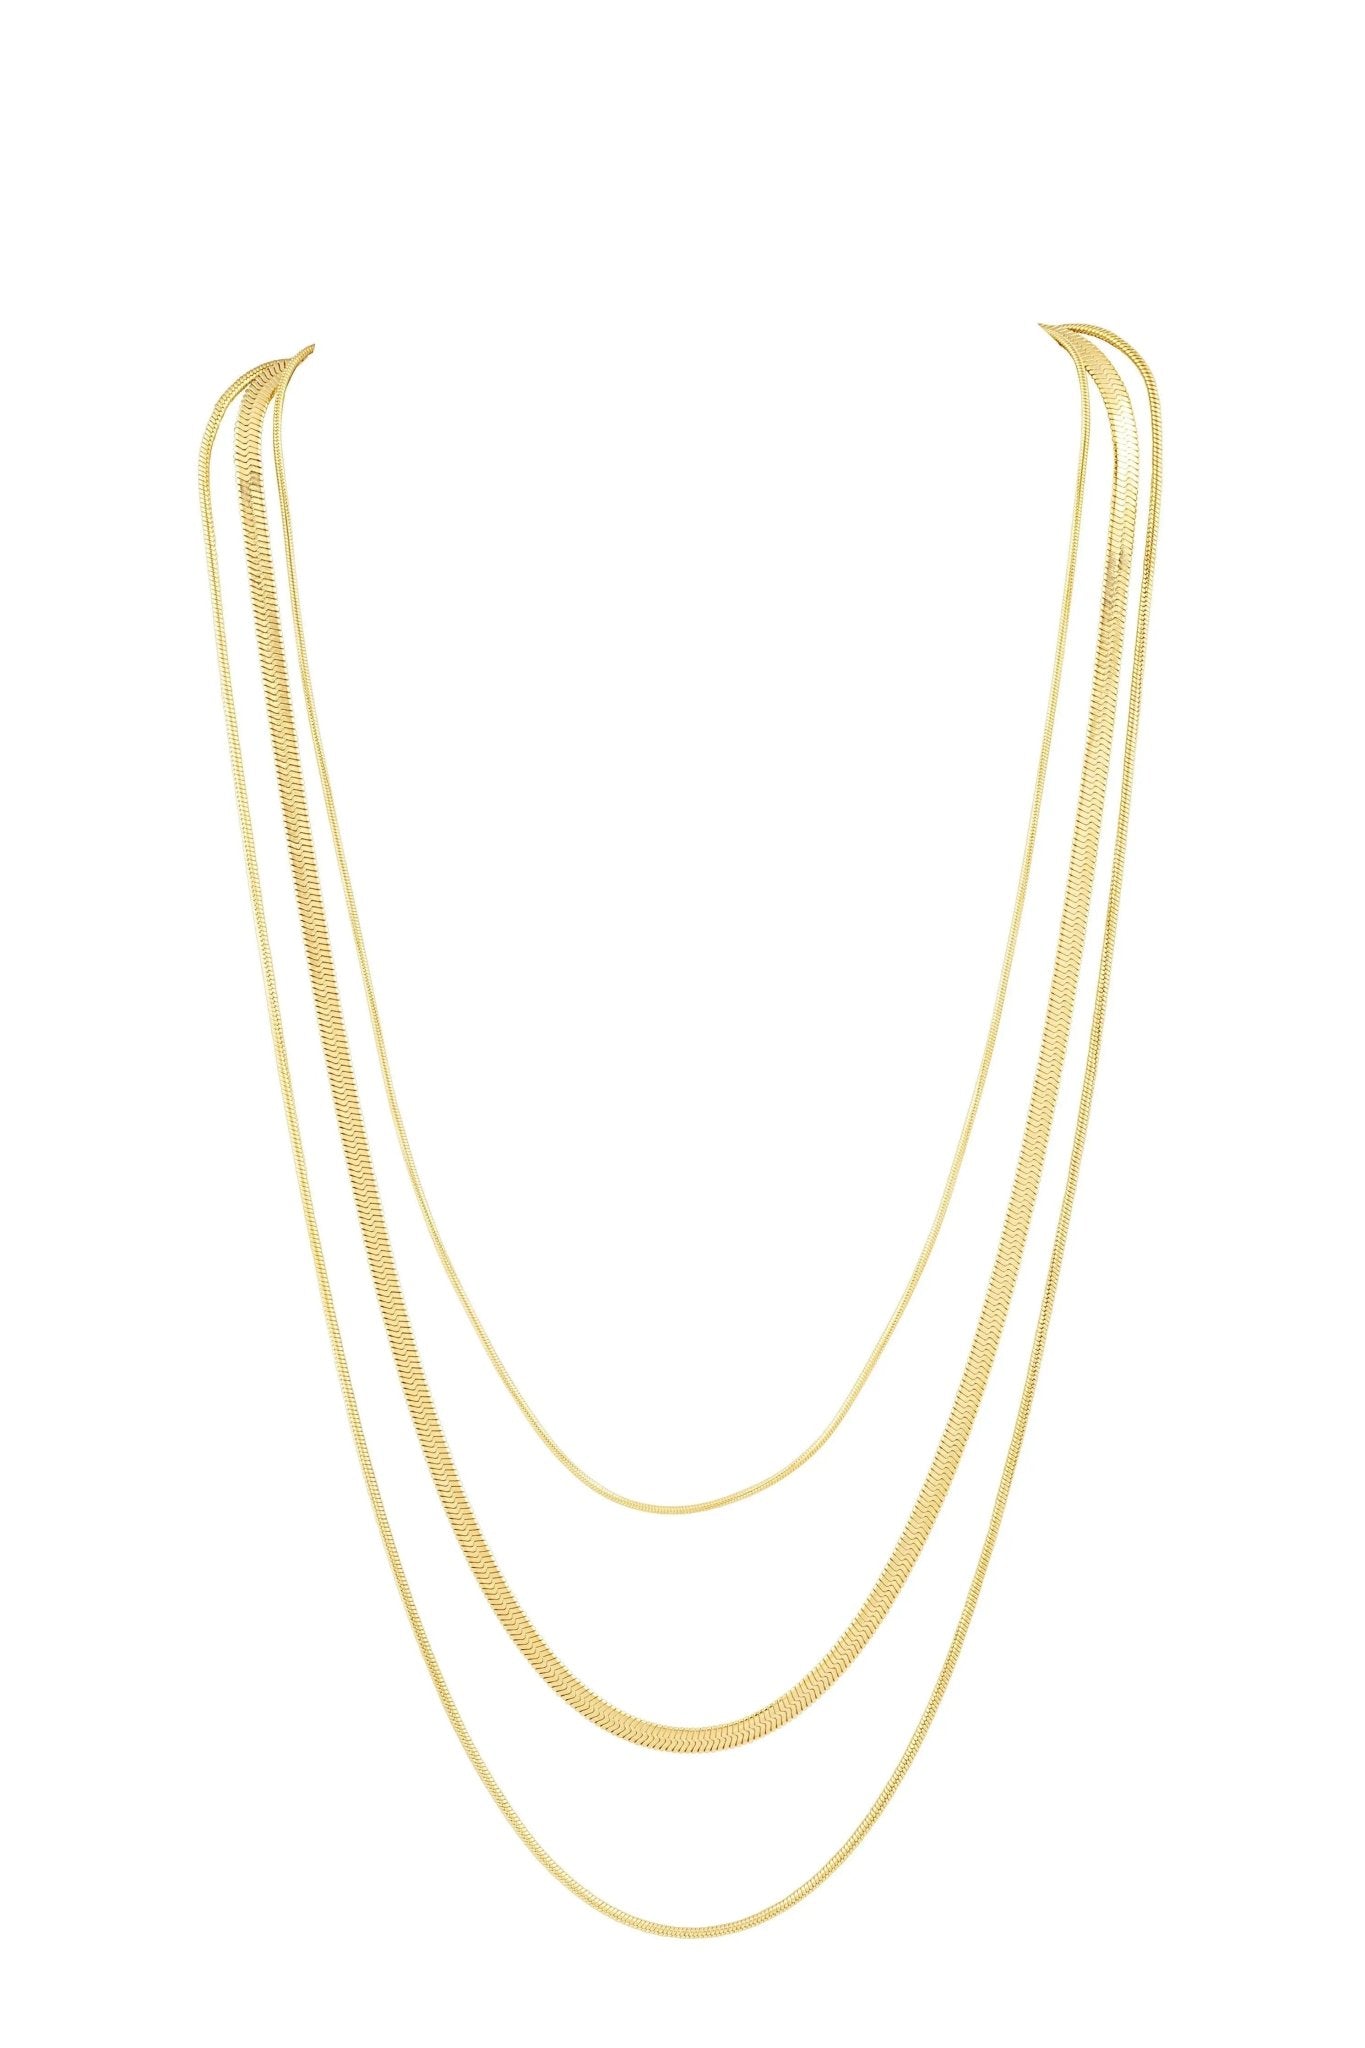 Rio Multi Chain Necklace - Final Sale - JO+CO